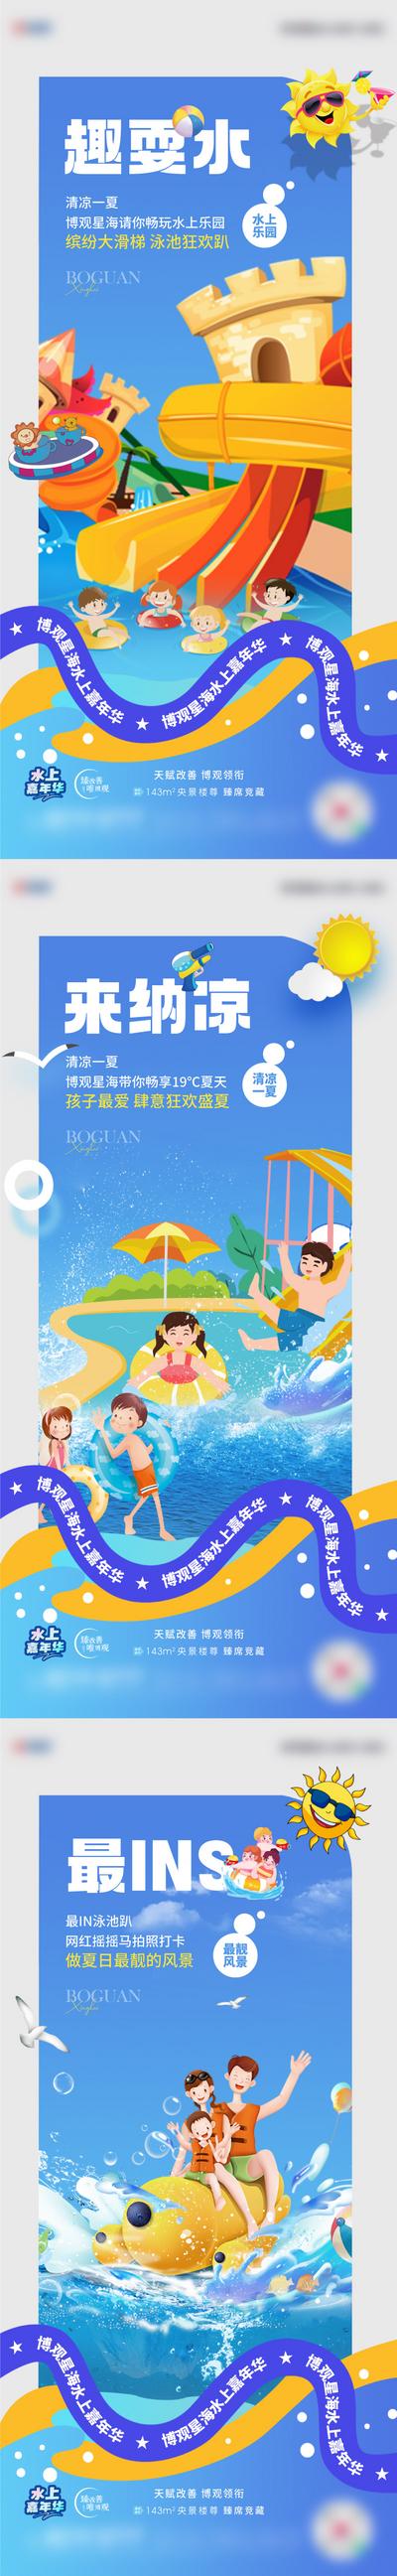 南门网 广告 海报 地产 水上乐园 活动 水上 嘉年华 网红 摇摇马 清凉一夏 系列